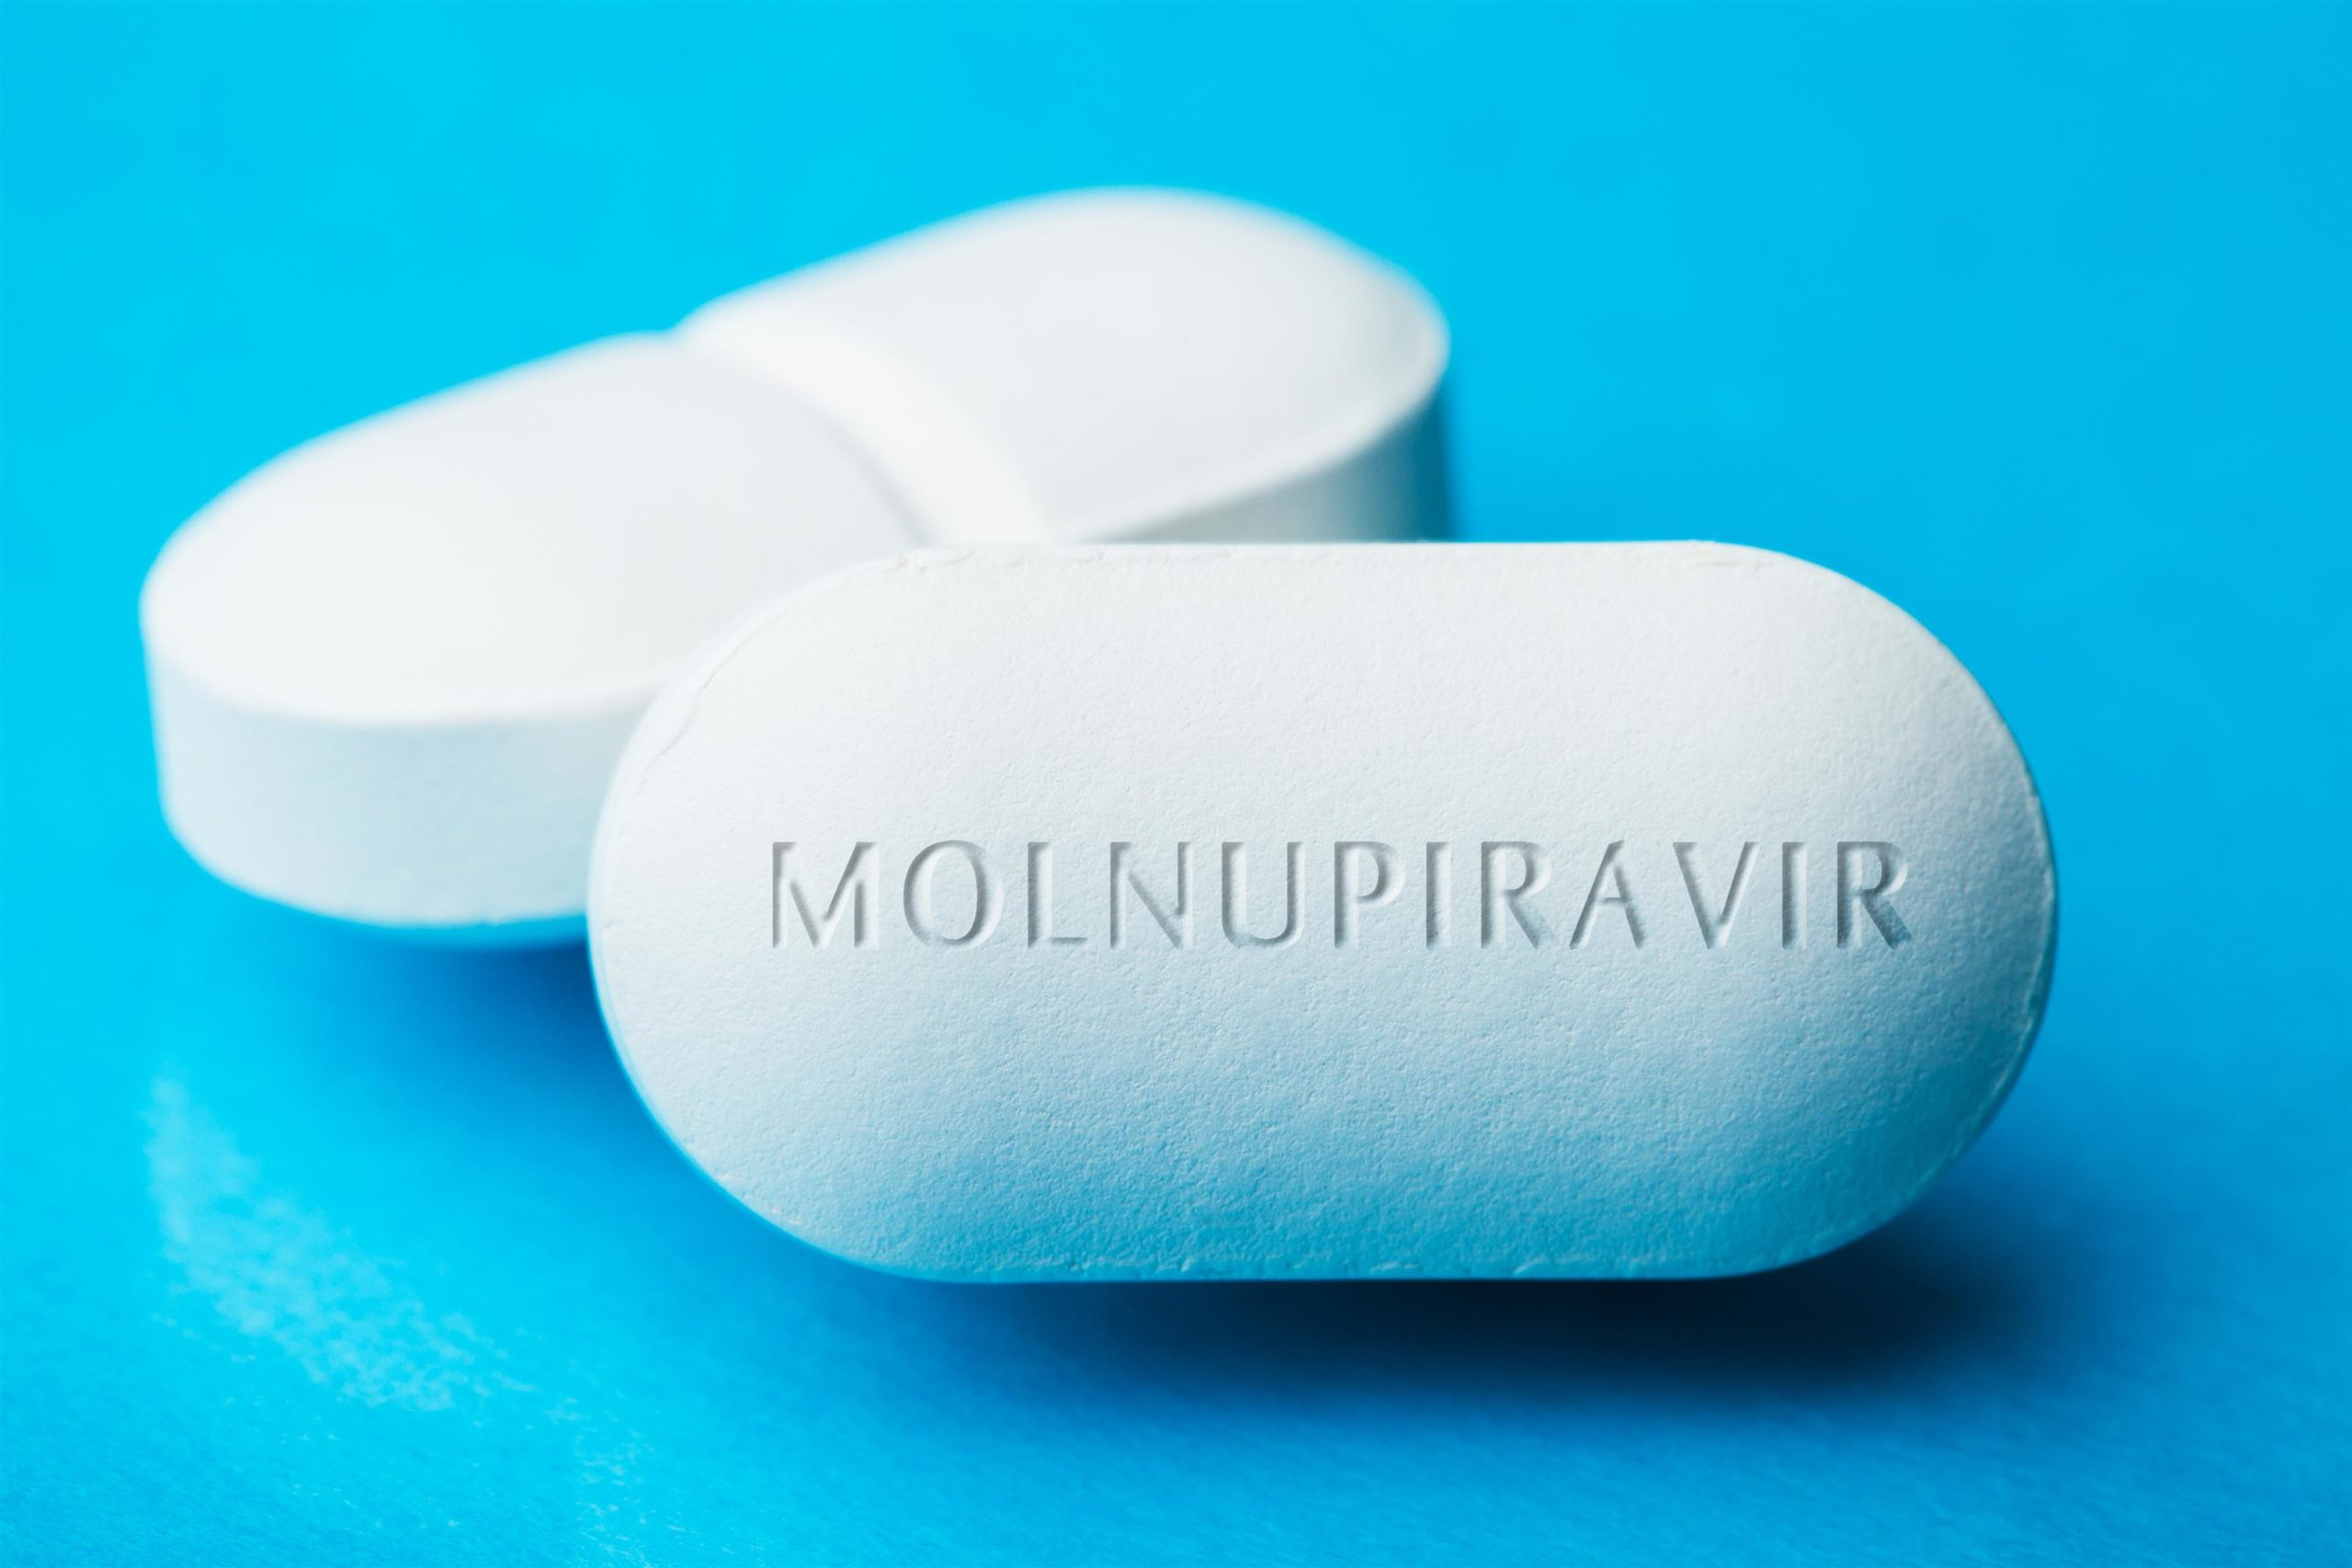 МОЗ підписало угоду про закупівлю ліків «Молнупіравір» від коронавірусу 